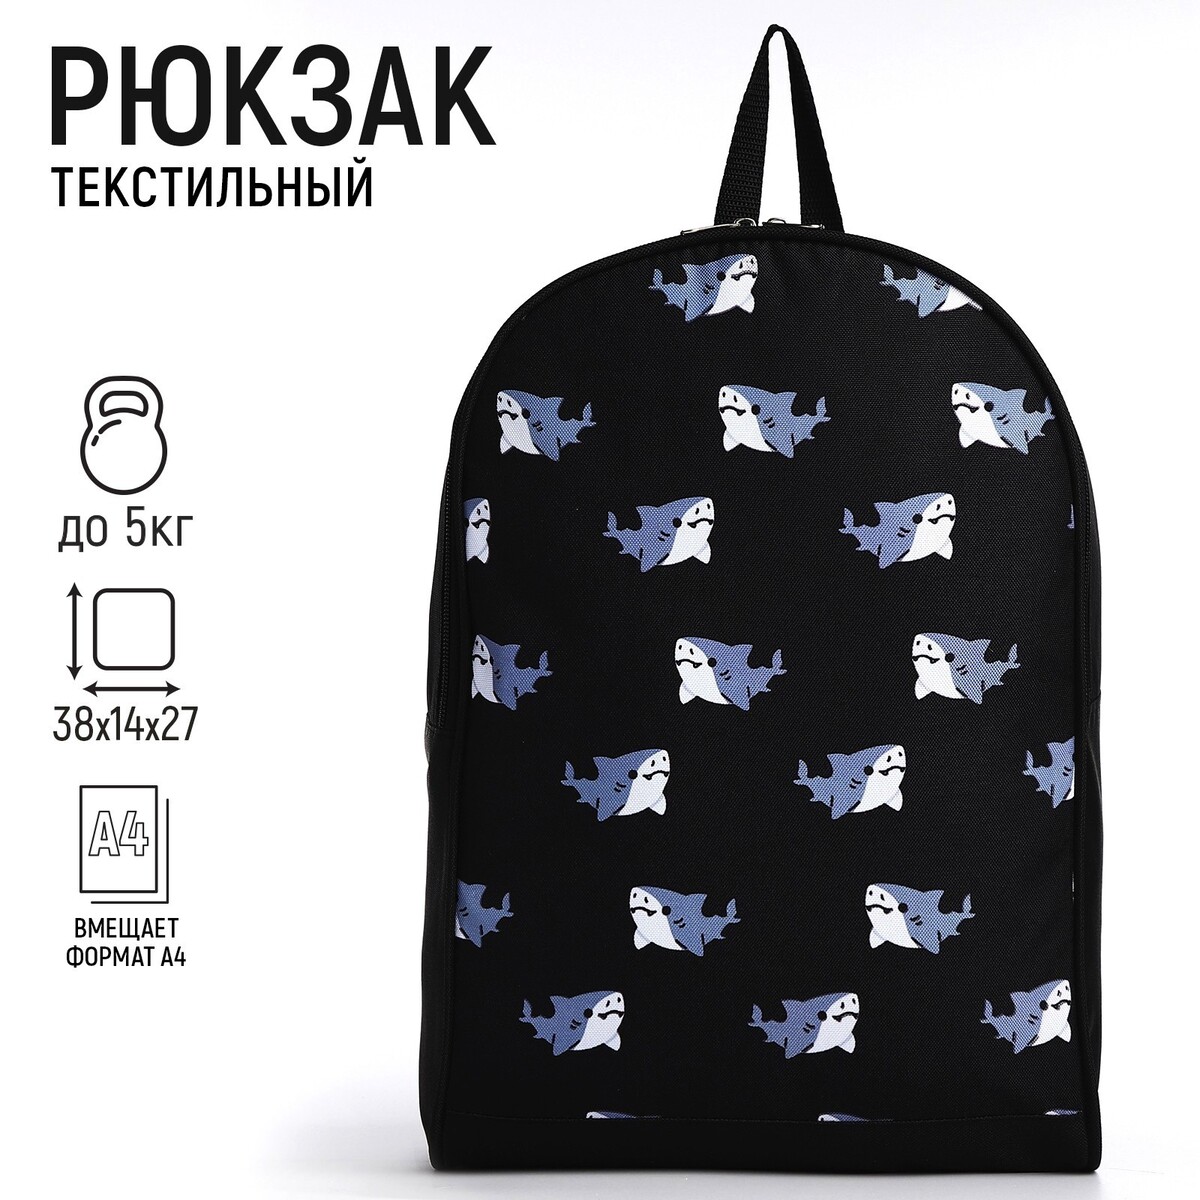 Рюкзак текстильный акулы, 38х14х27 см, цвет черный рюкзак текстильный котик в костюме 38х14х27 см